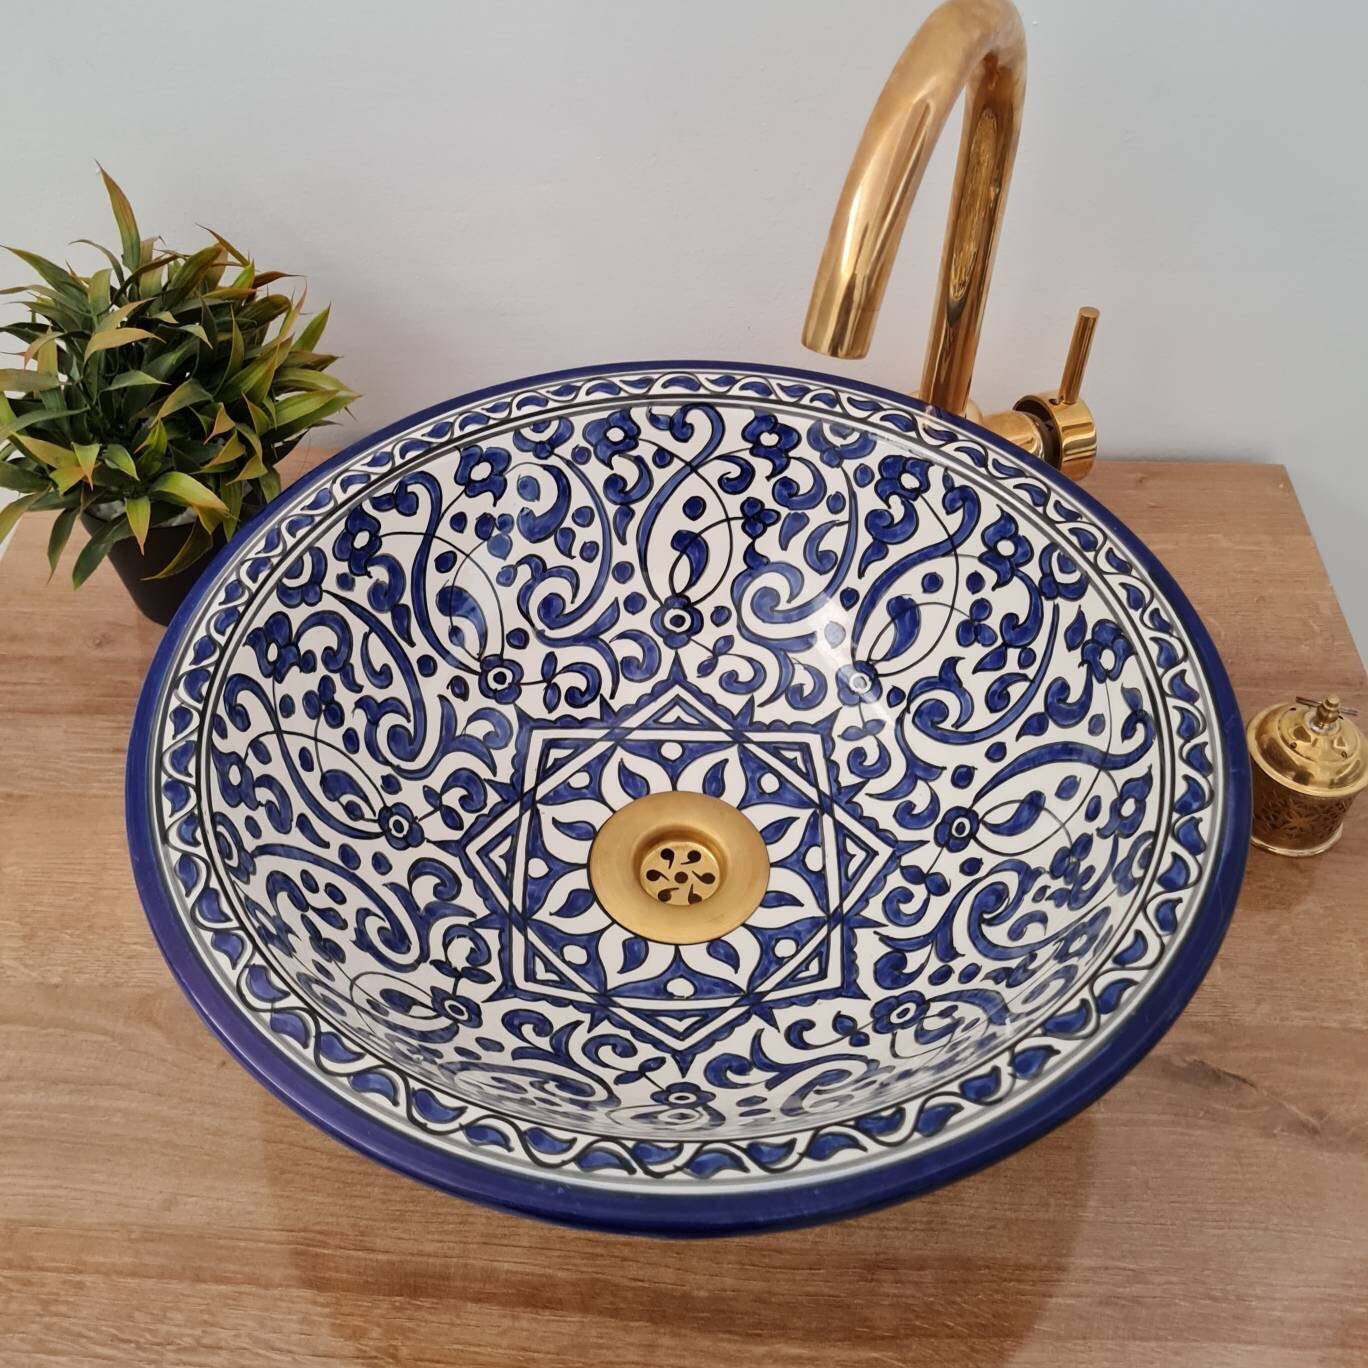 Vasque a poser | Vasque bleu pour salle de bain / Vasque marocaine #169